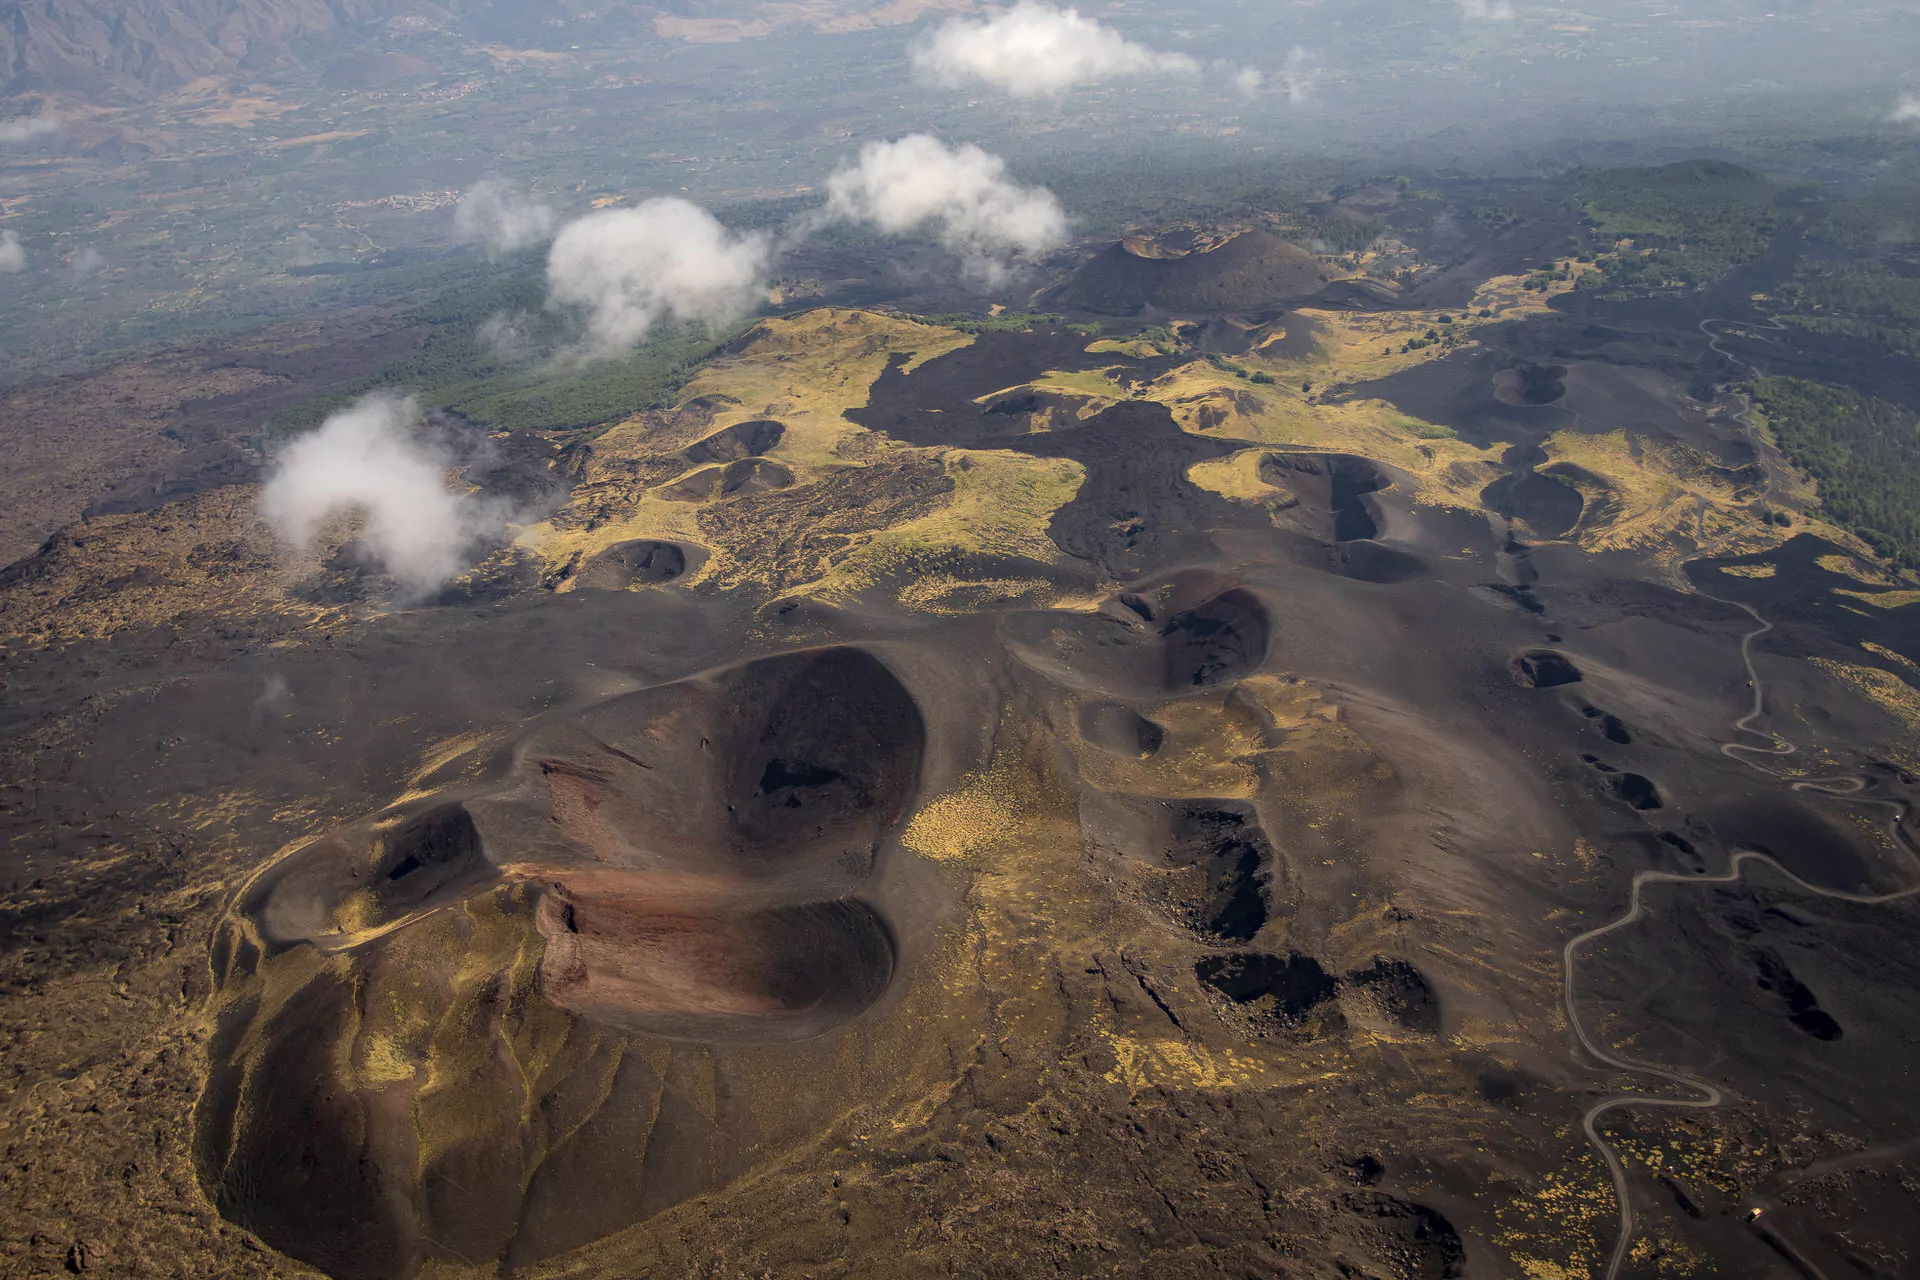 De nombreuses éruptions se forment le long du rift nord-est. Nous découvrons les éruptions de 1911, 1923 et 2002 lors de notre tour du cratère nord de l'Etna.